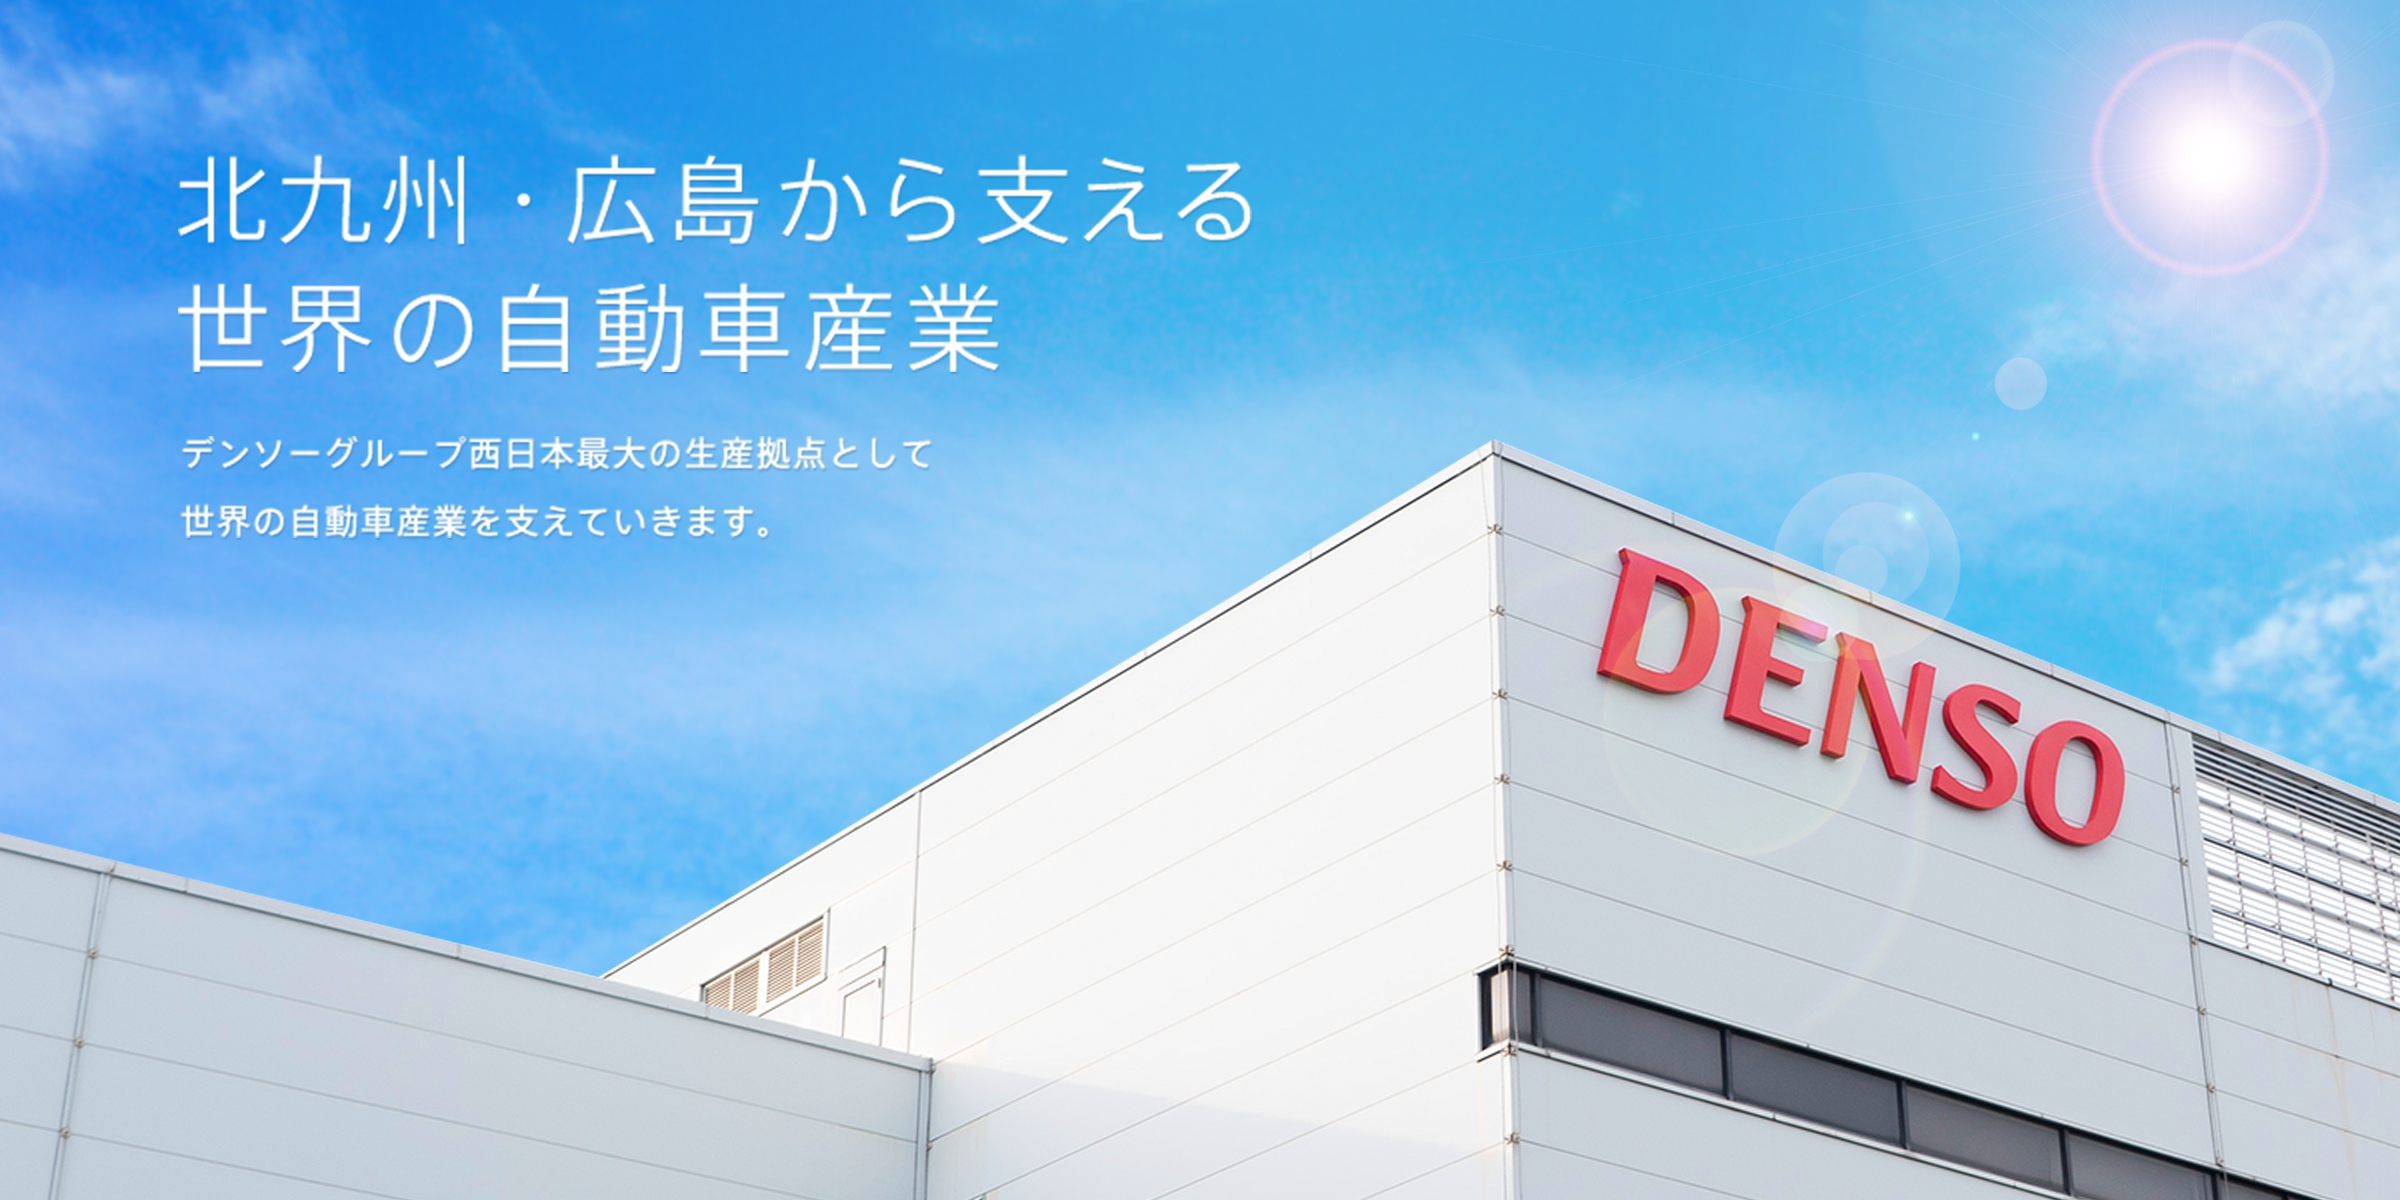 北九州市・広島から支える世界の自動車産業。
デンソーグループ西日本最大の生産拠点として、世界の自動車産業を支えていきます。